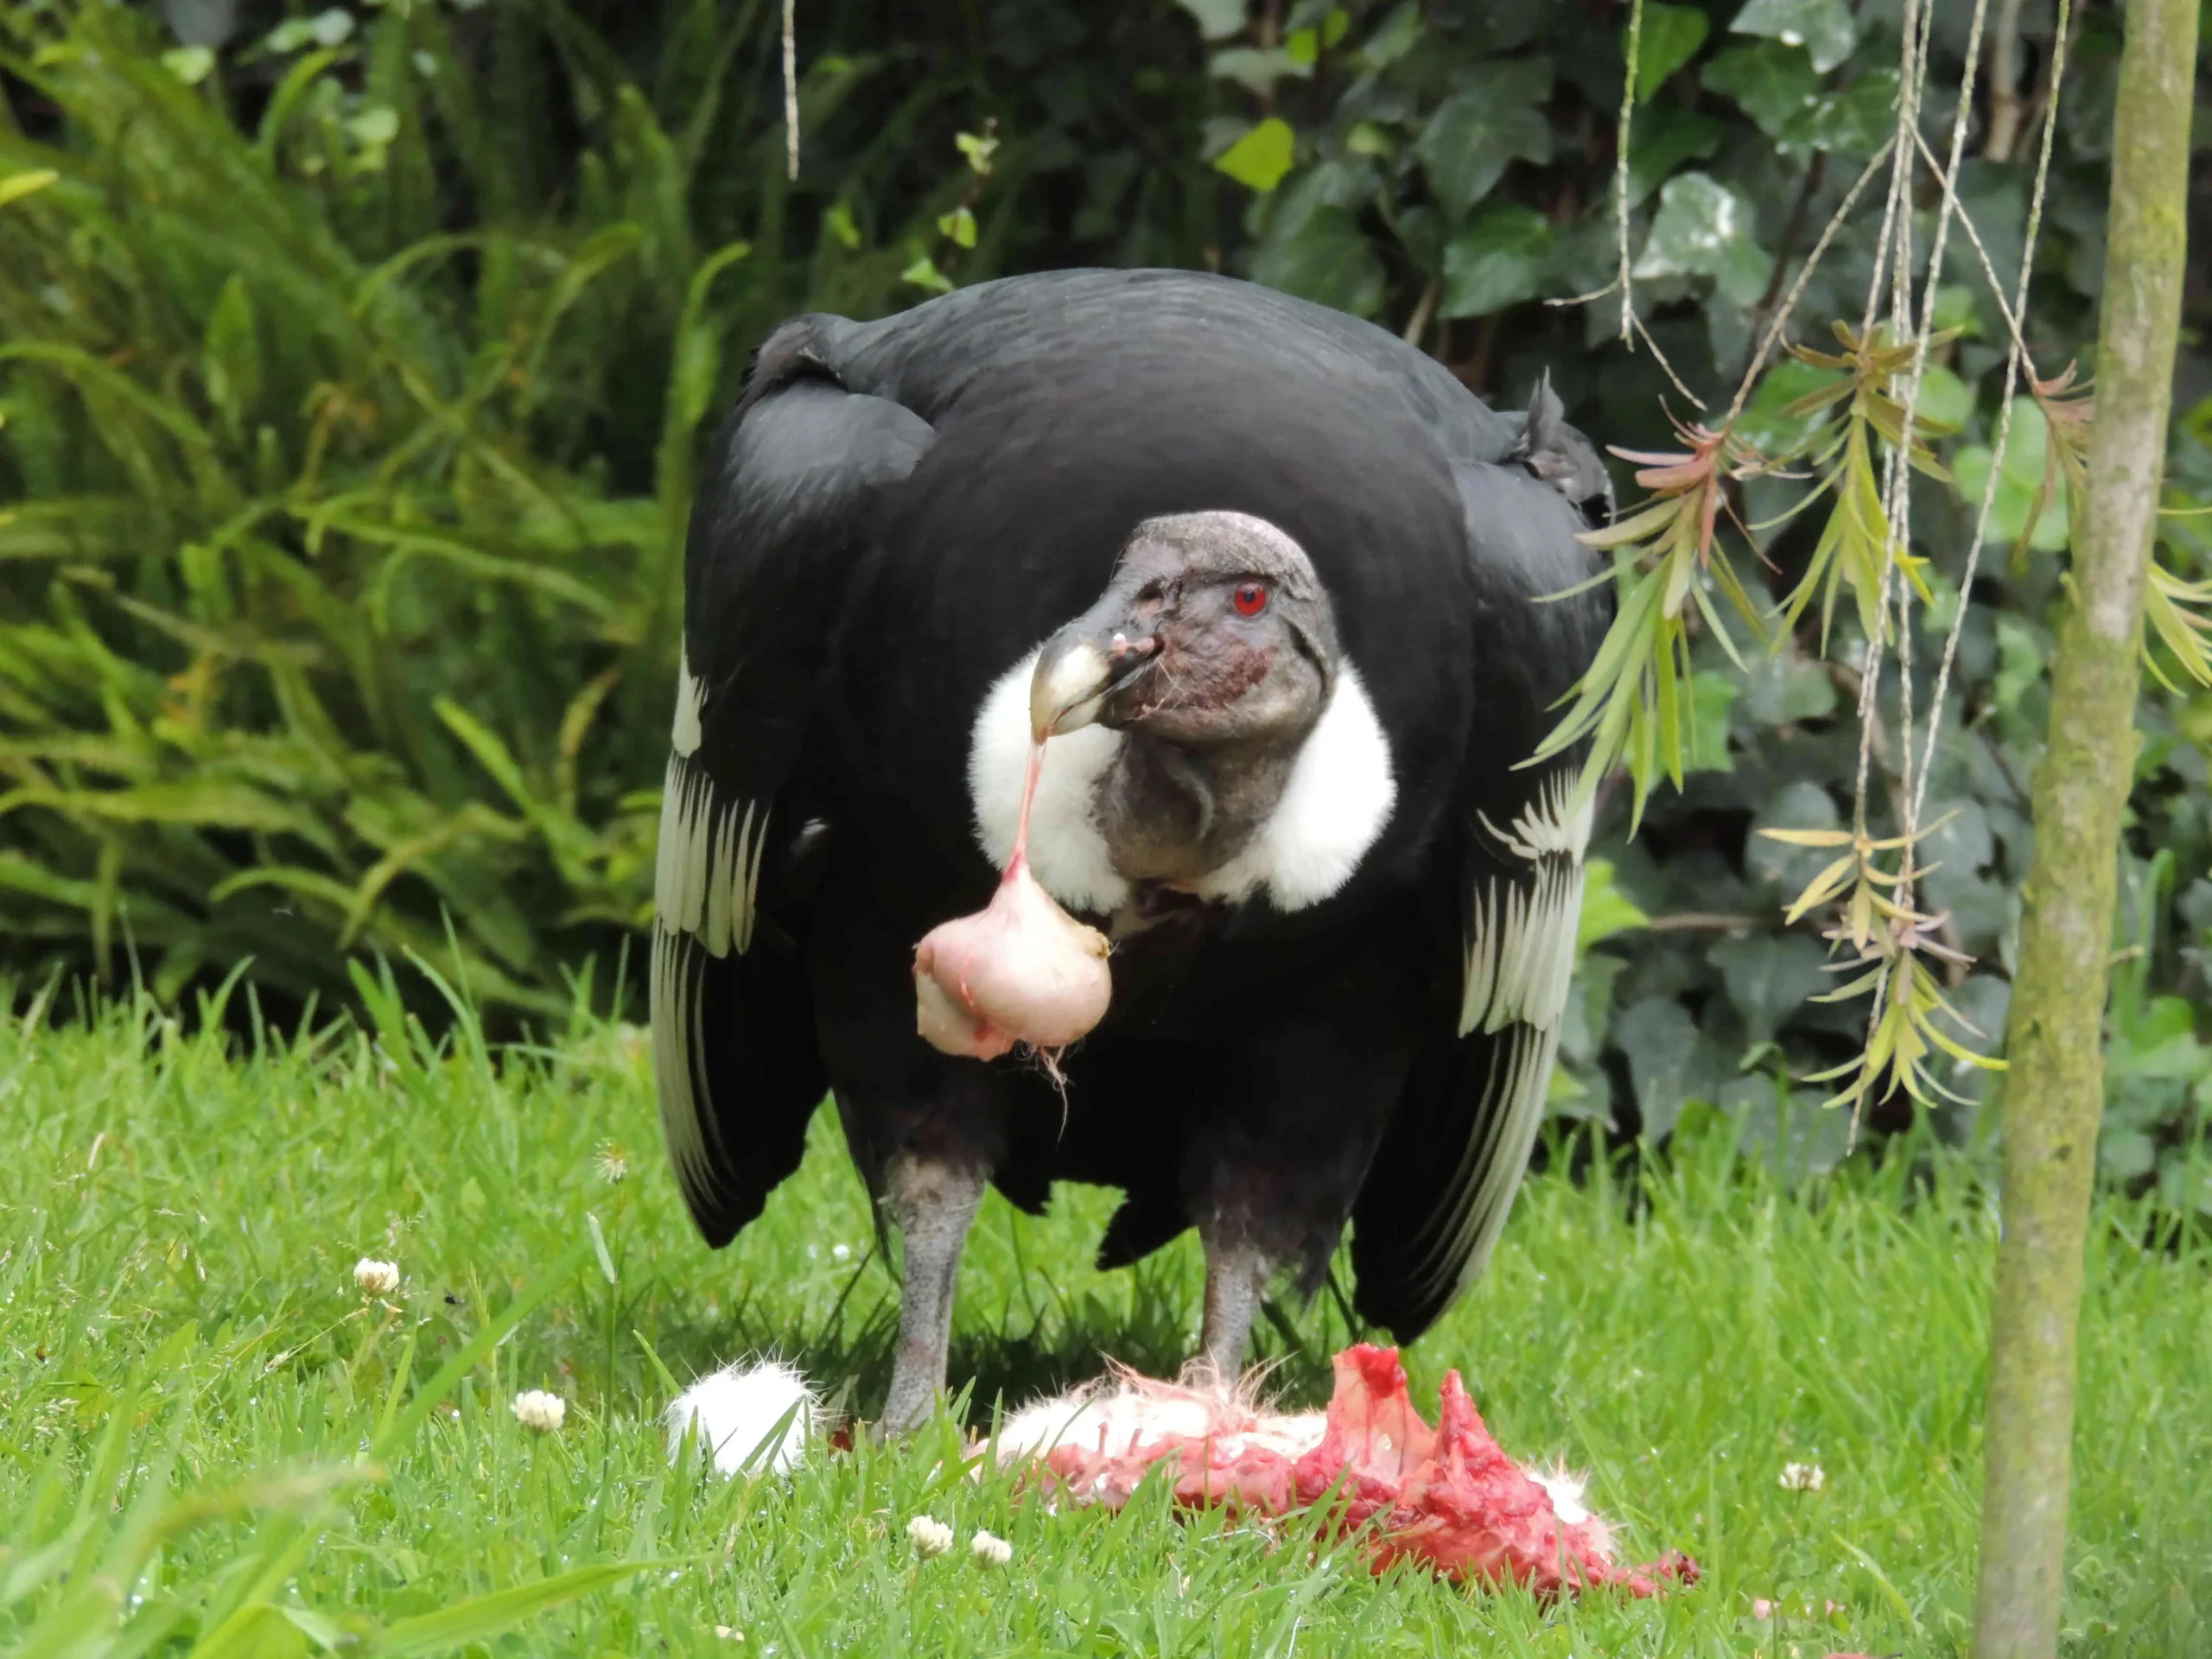 ave condor alimentacion - Qué come el cóndor marca los animales que comen y responde